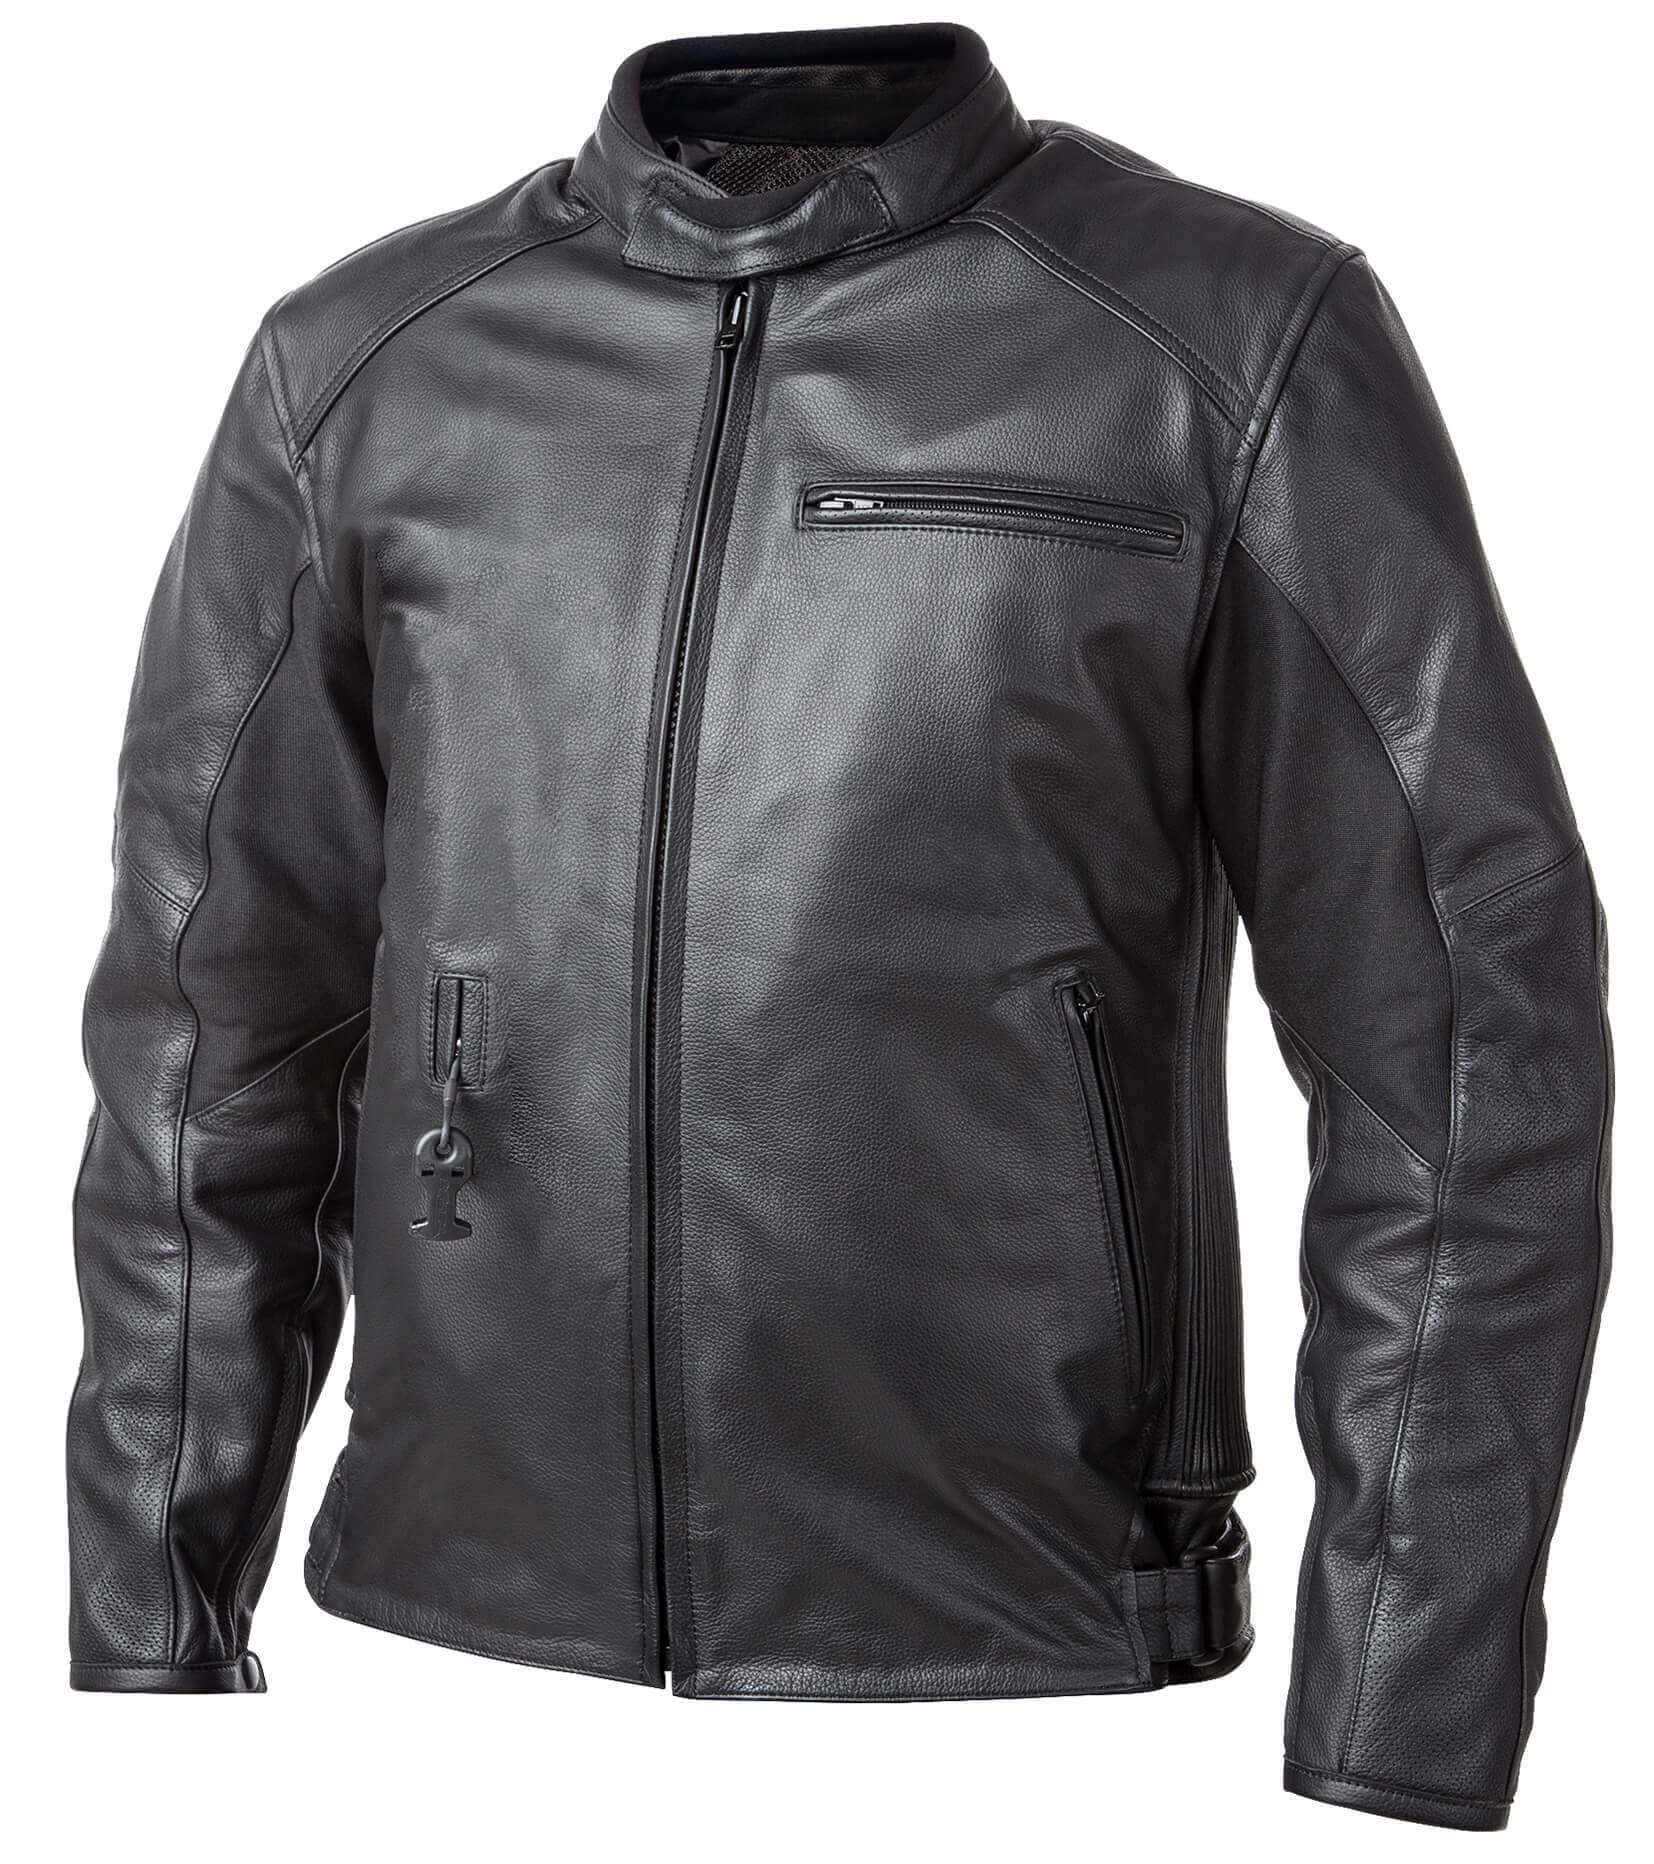 Airbag kabát Helite Roadster Vintage fekete bőr  Fekete  S